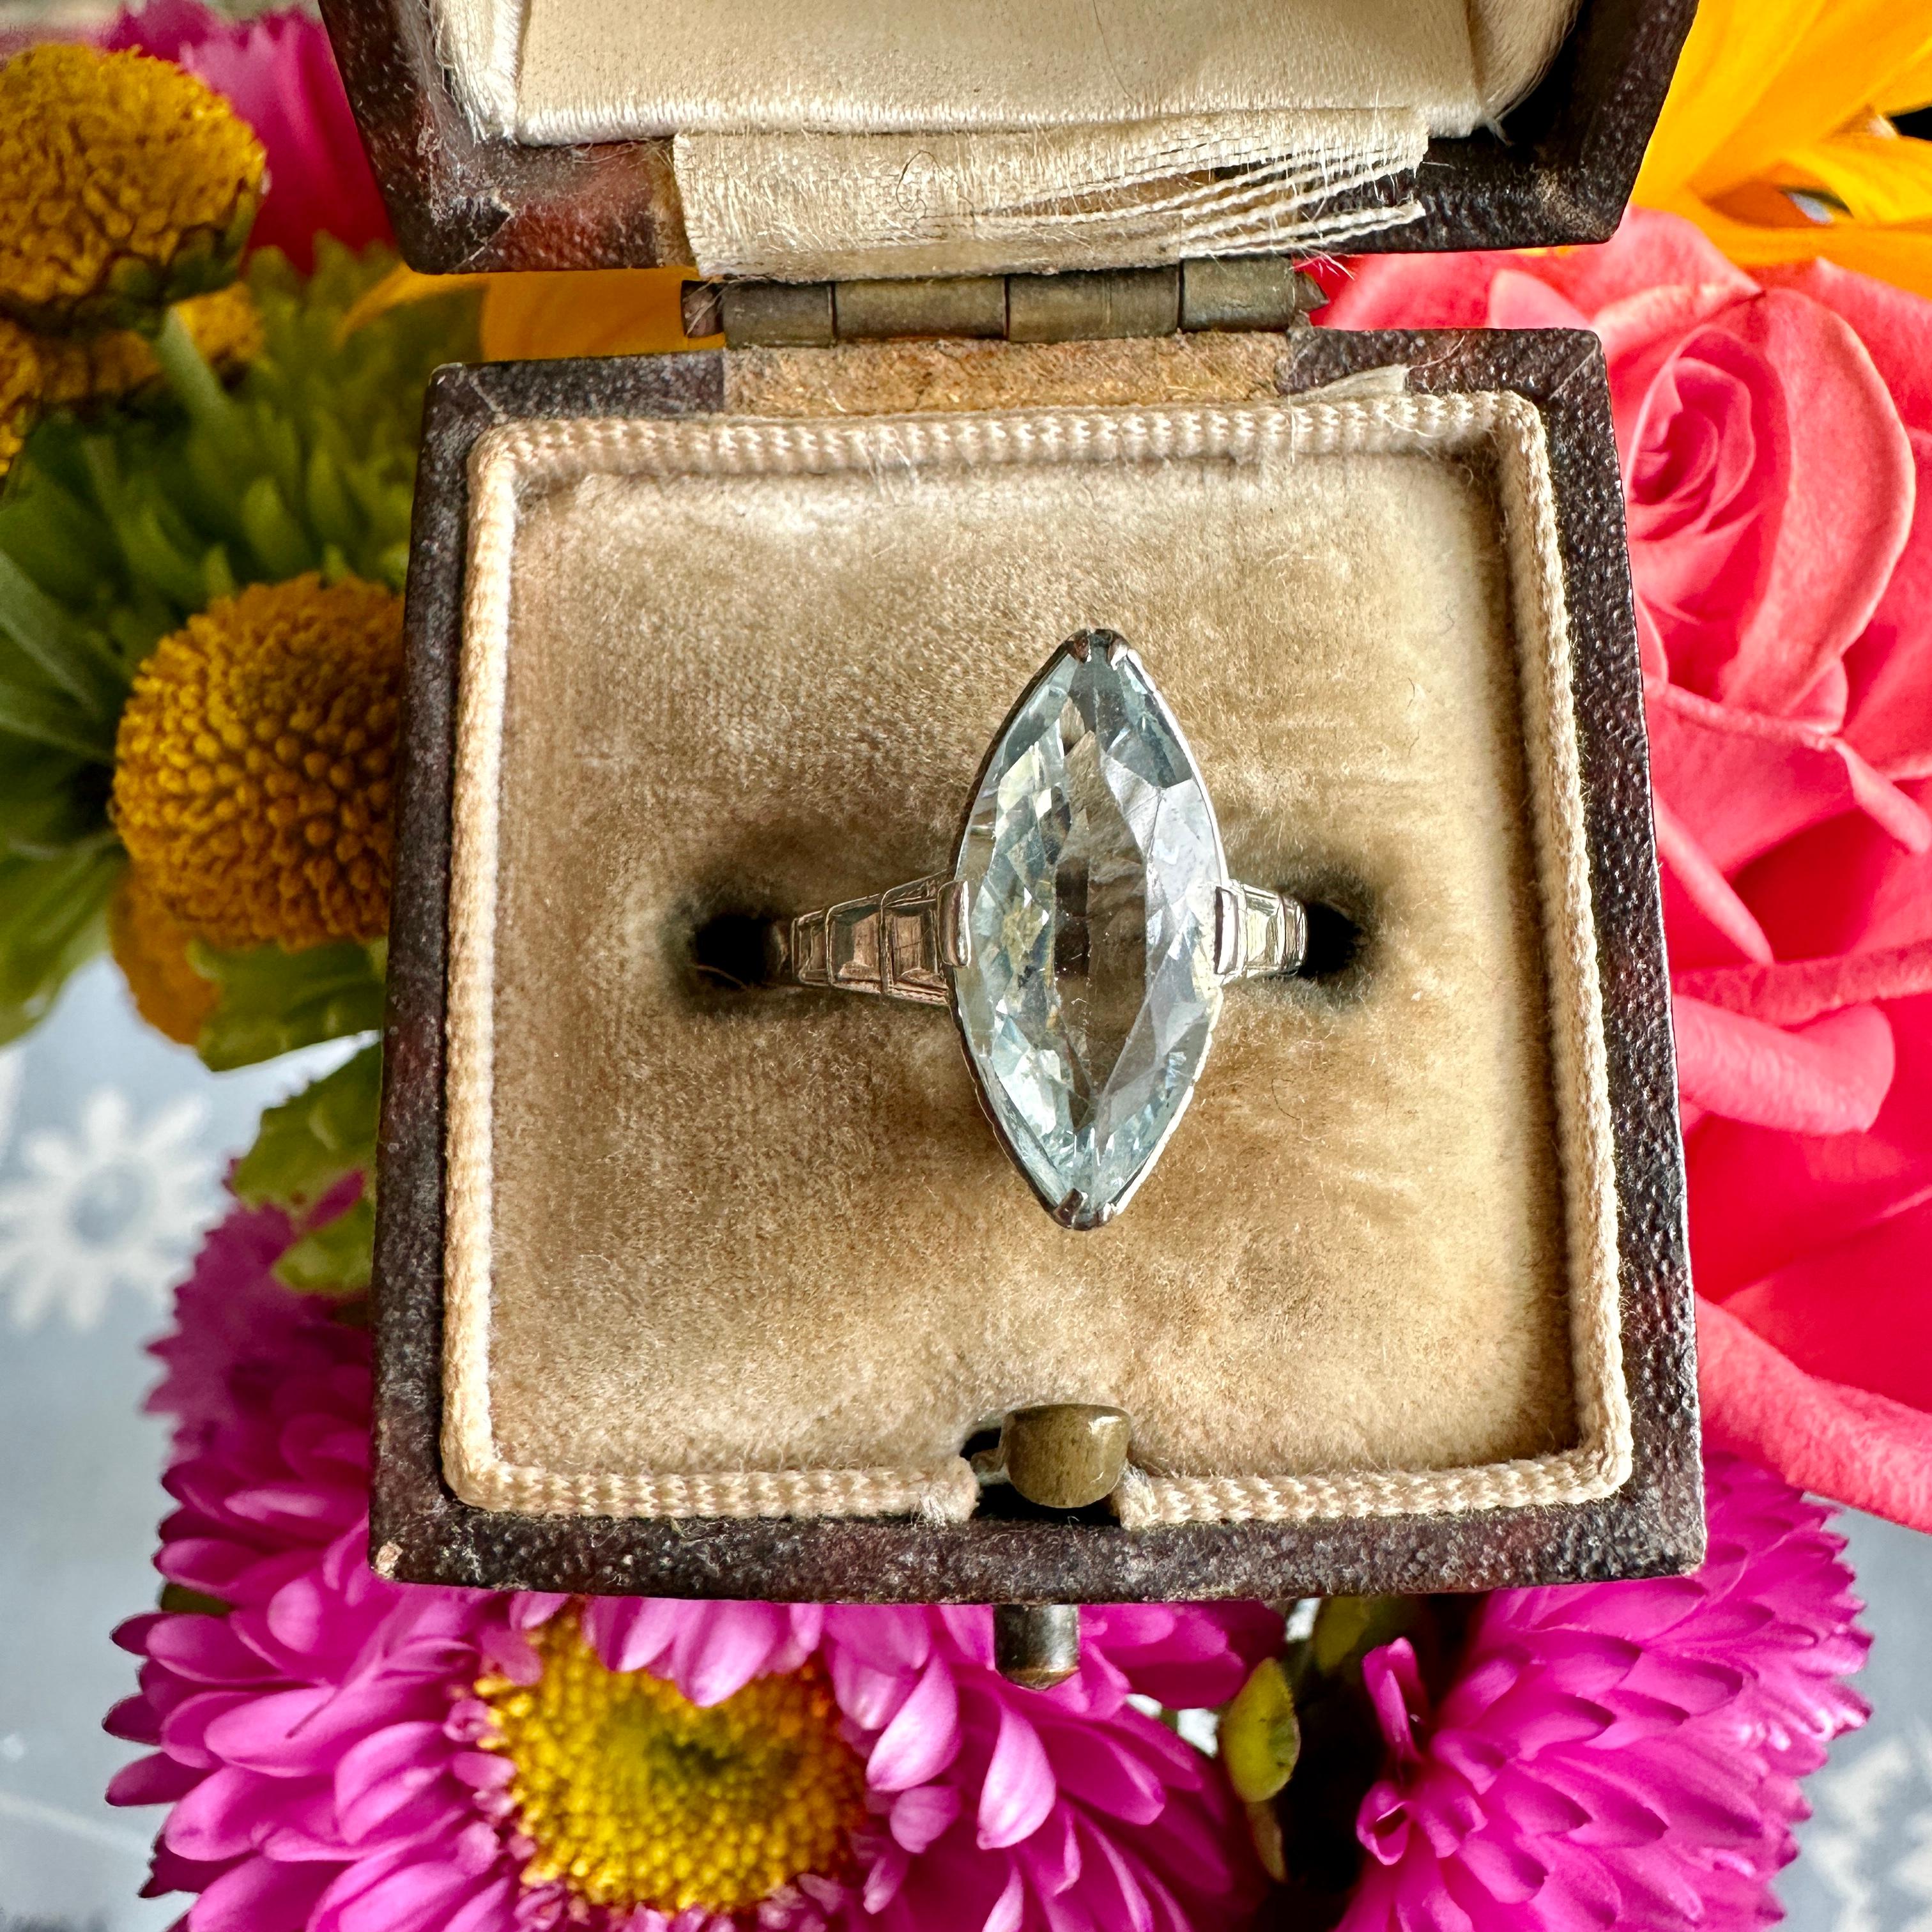 Einzelheiten:
Ein sehr süßer Art Deco Ring im Marquise-Schliff! Dieser schöne und feminine Aquamarinring aus 14-karätigem Weißgold aus der Art-Déco-Periode ist ein schöner Ring, der jede Sammlung bereichert! Die Schultern des Rings sind mit einer